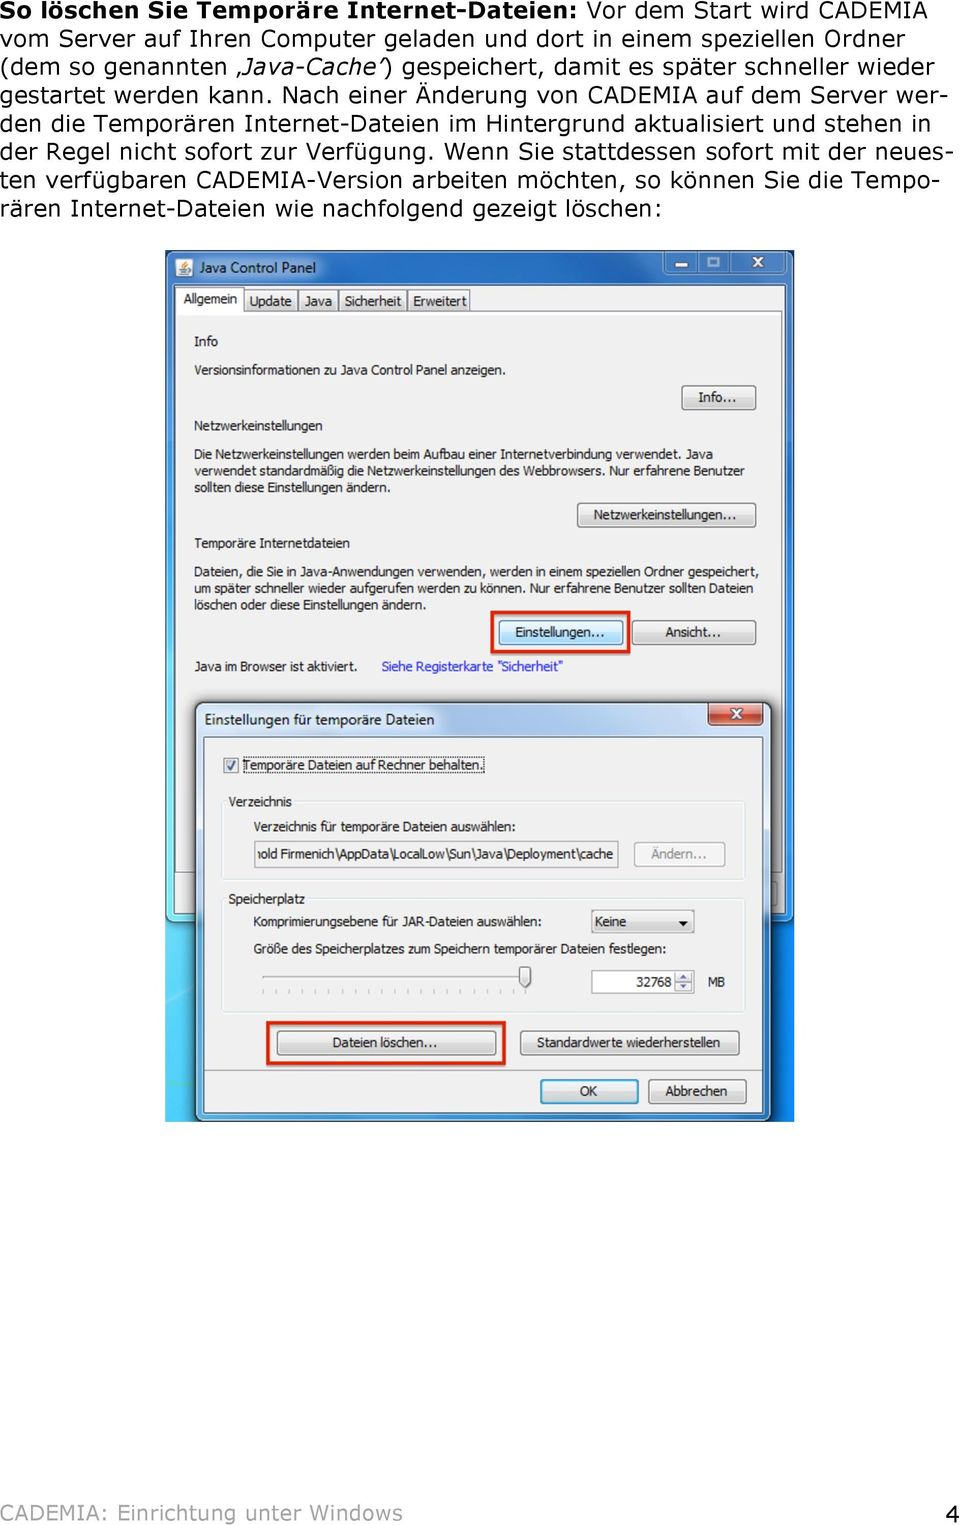 Nach einer Änderung von CADEMIA auf dem Server werden die Temporären Internet-Dateien im Hintergrund aktualisiert und stehen in der Regel nicht sofort